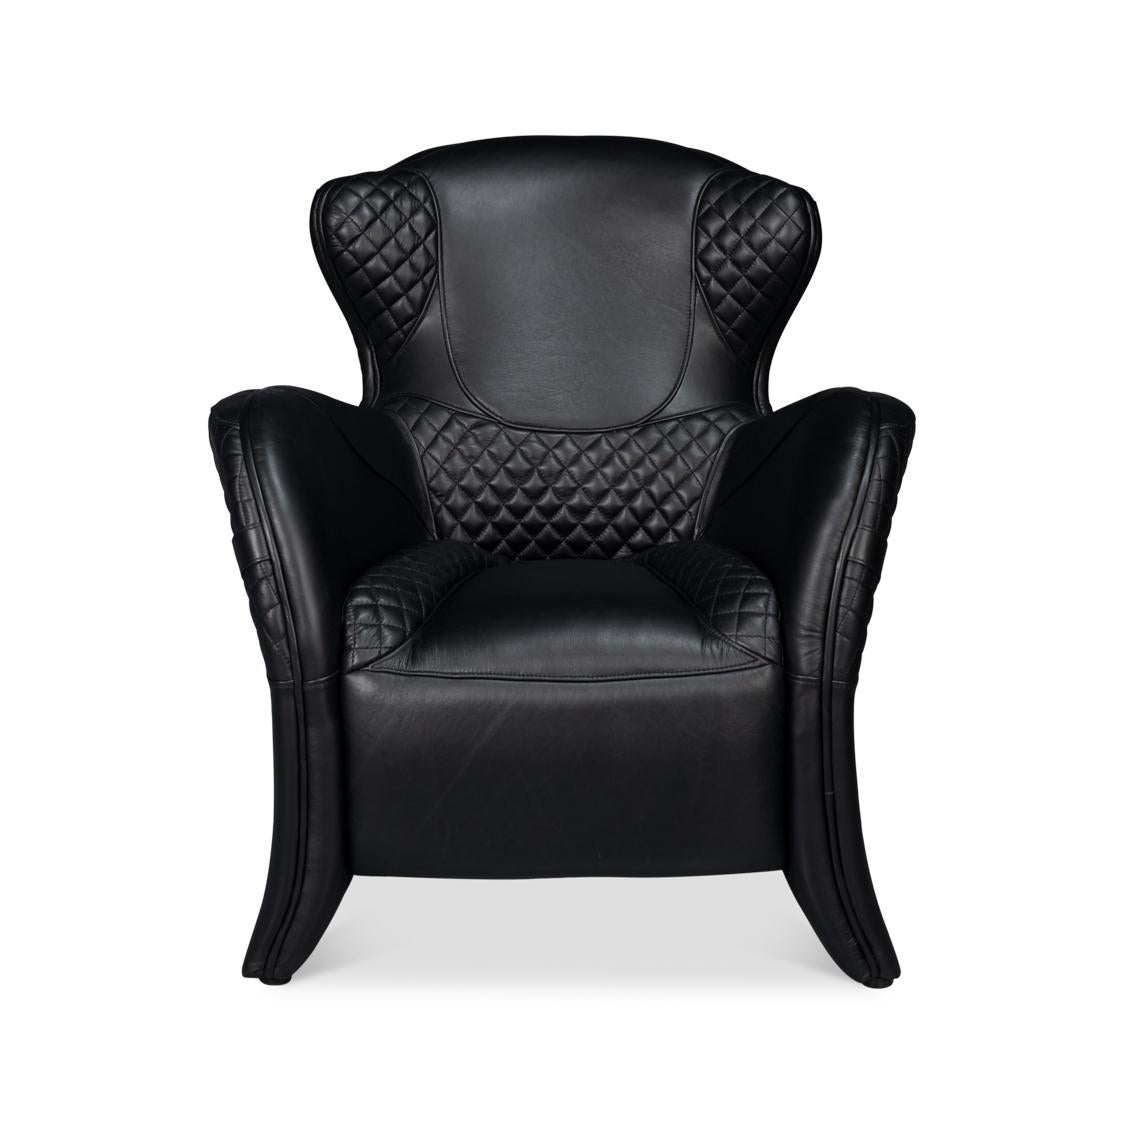 En cuir noir Onyx de première qualité, avec un dossier incliné et des accoudoirs incurvés, avec une assise et un dossier partiellement matelassés, avec des boucles décoratives.
Dimensions : 31